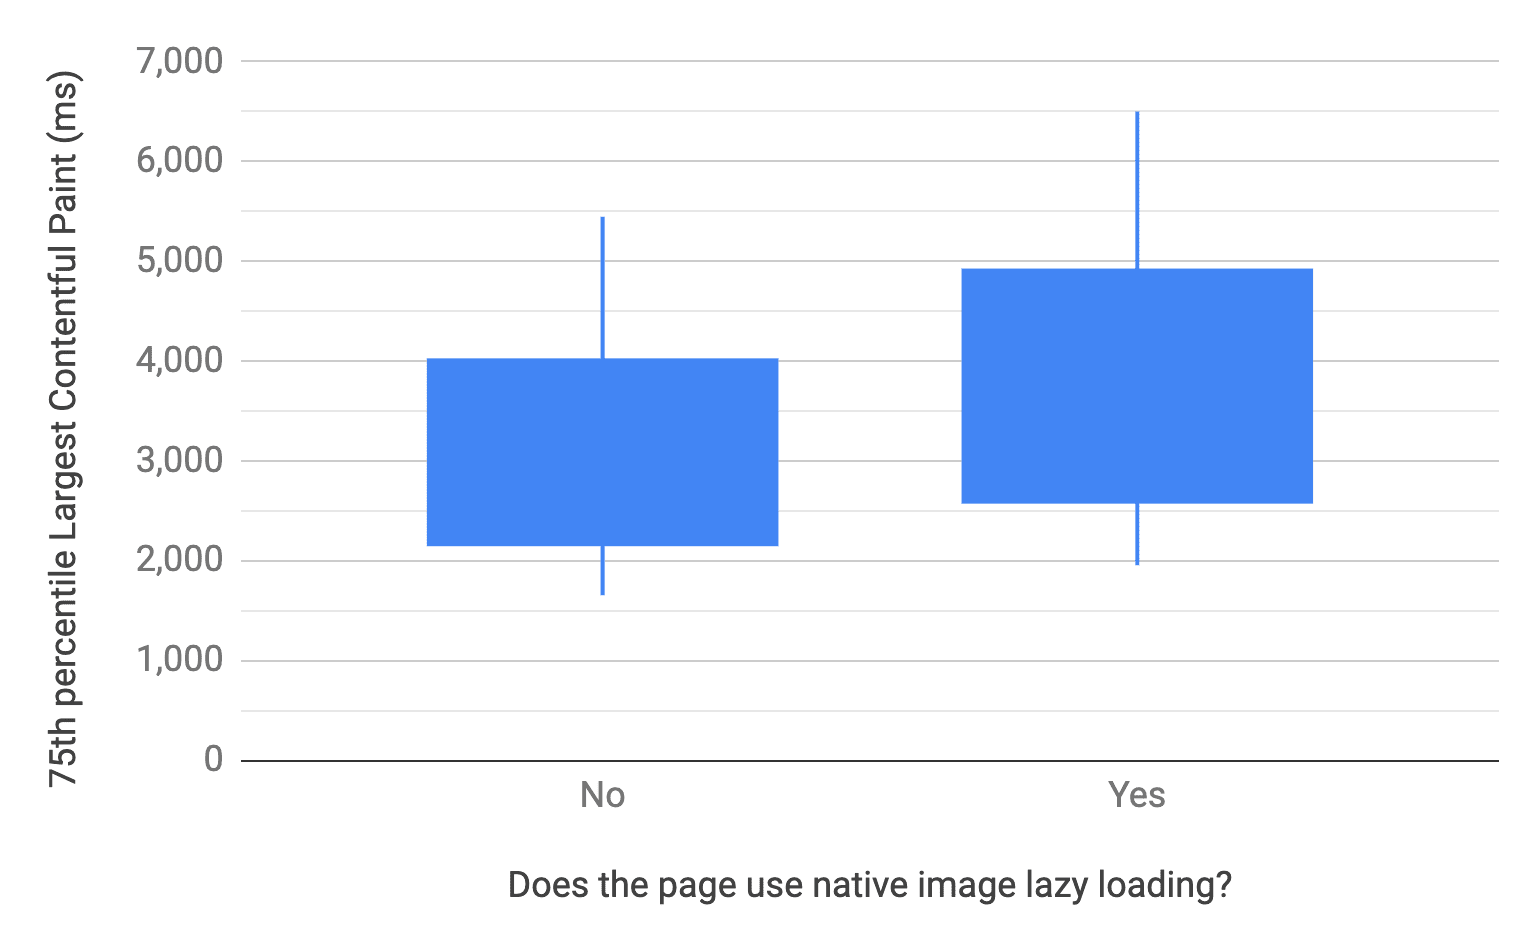 Yerel resim geç yüklemesini kullanan ve kullanmayan sayfalar için 10, 25, 75 ve 90. yüzdelik dilimleri gösteren kutu ve bıyık grafiği. Bununla karşılaştırıldığında, LCP kullanmayan sayfaların LCP dağılımı kullananlara göre daha hızlıdır.